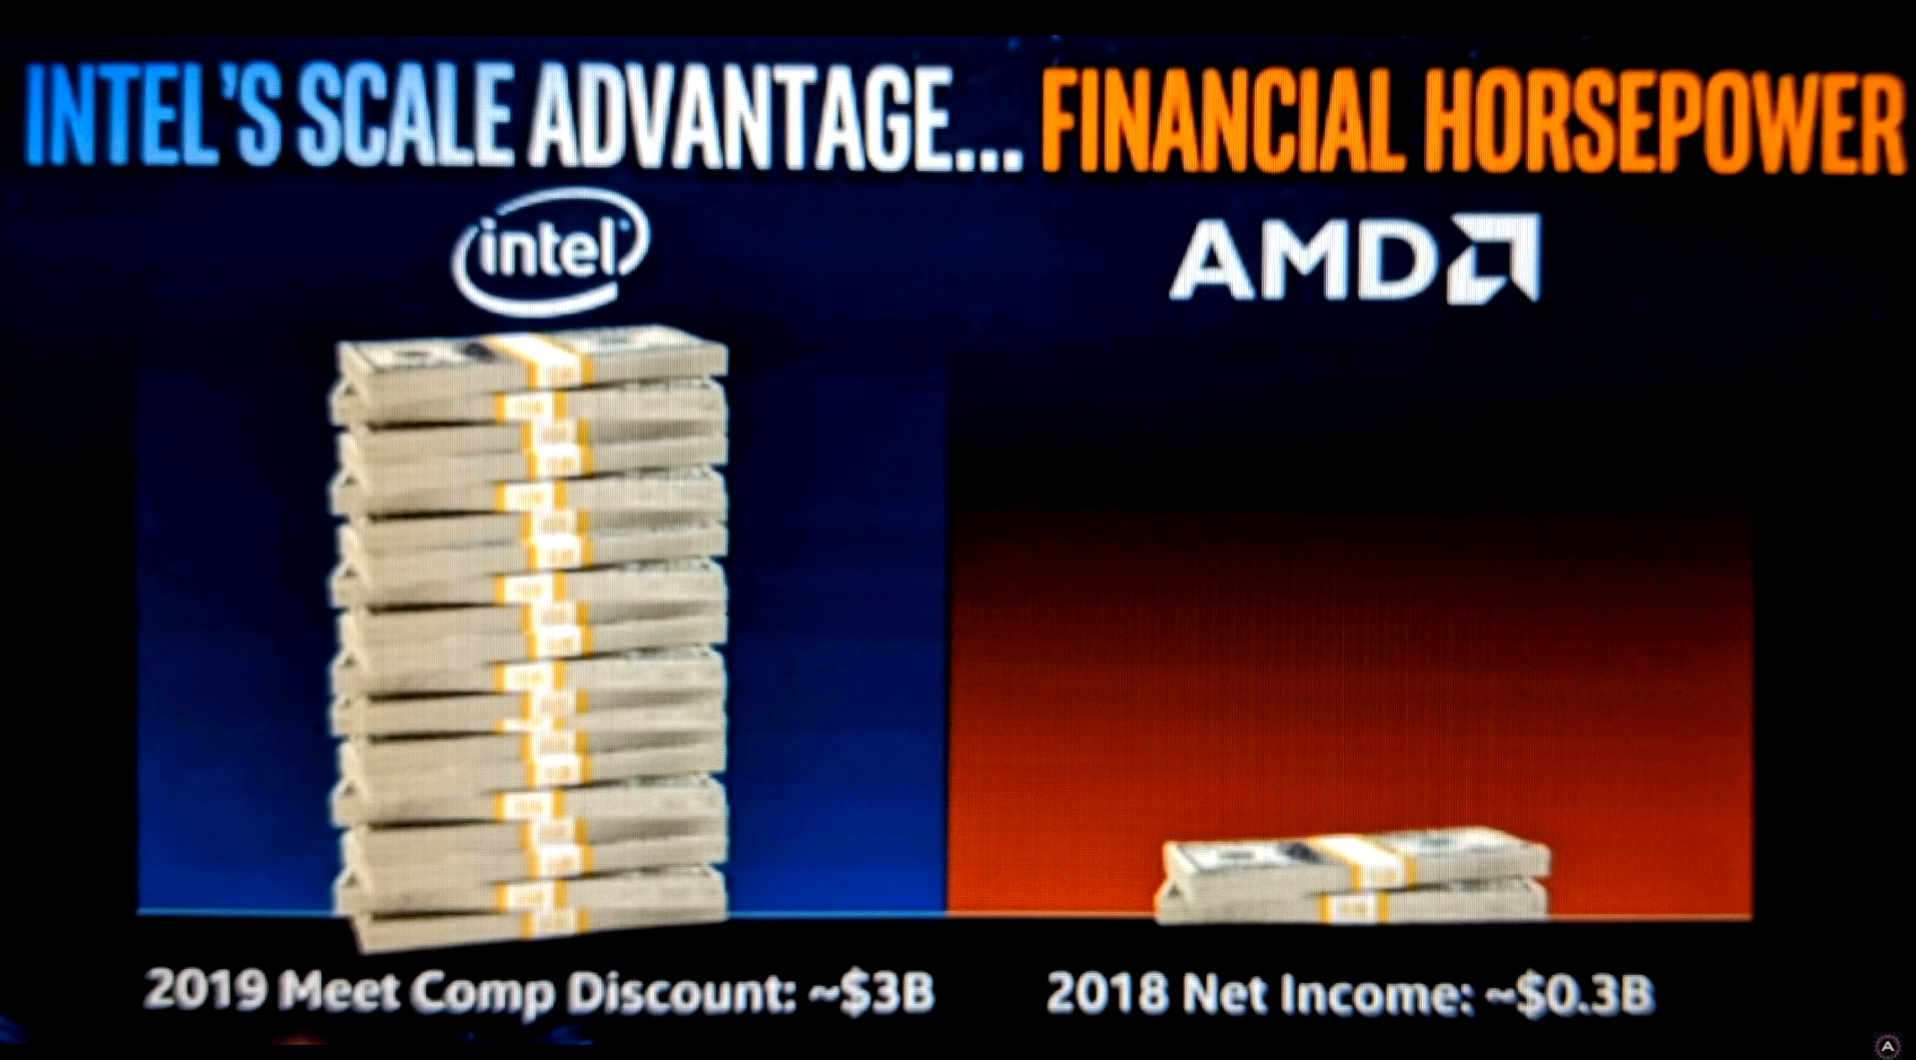 شركة انتل علي استعداد لخسارة الكثير من الأموال للرد علي تفوق شركة AMD في الفترة القادمة ؟!